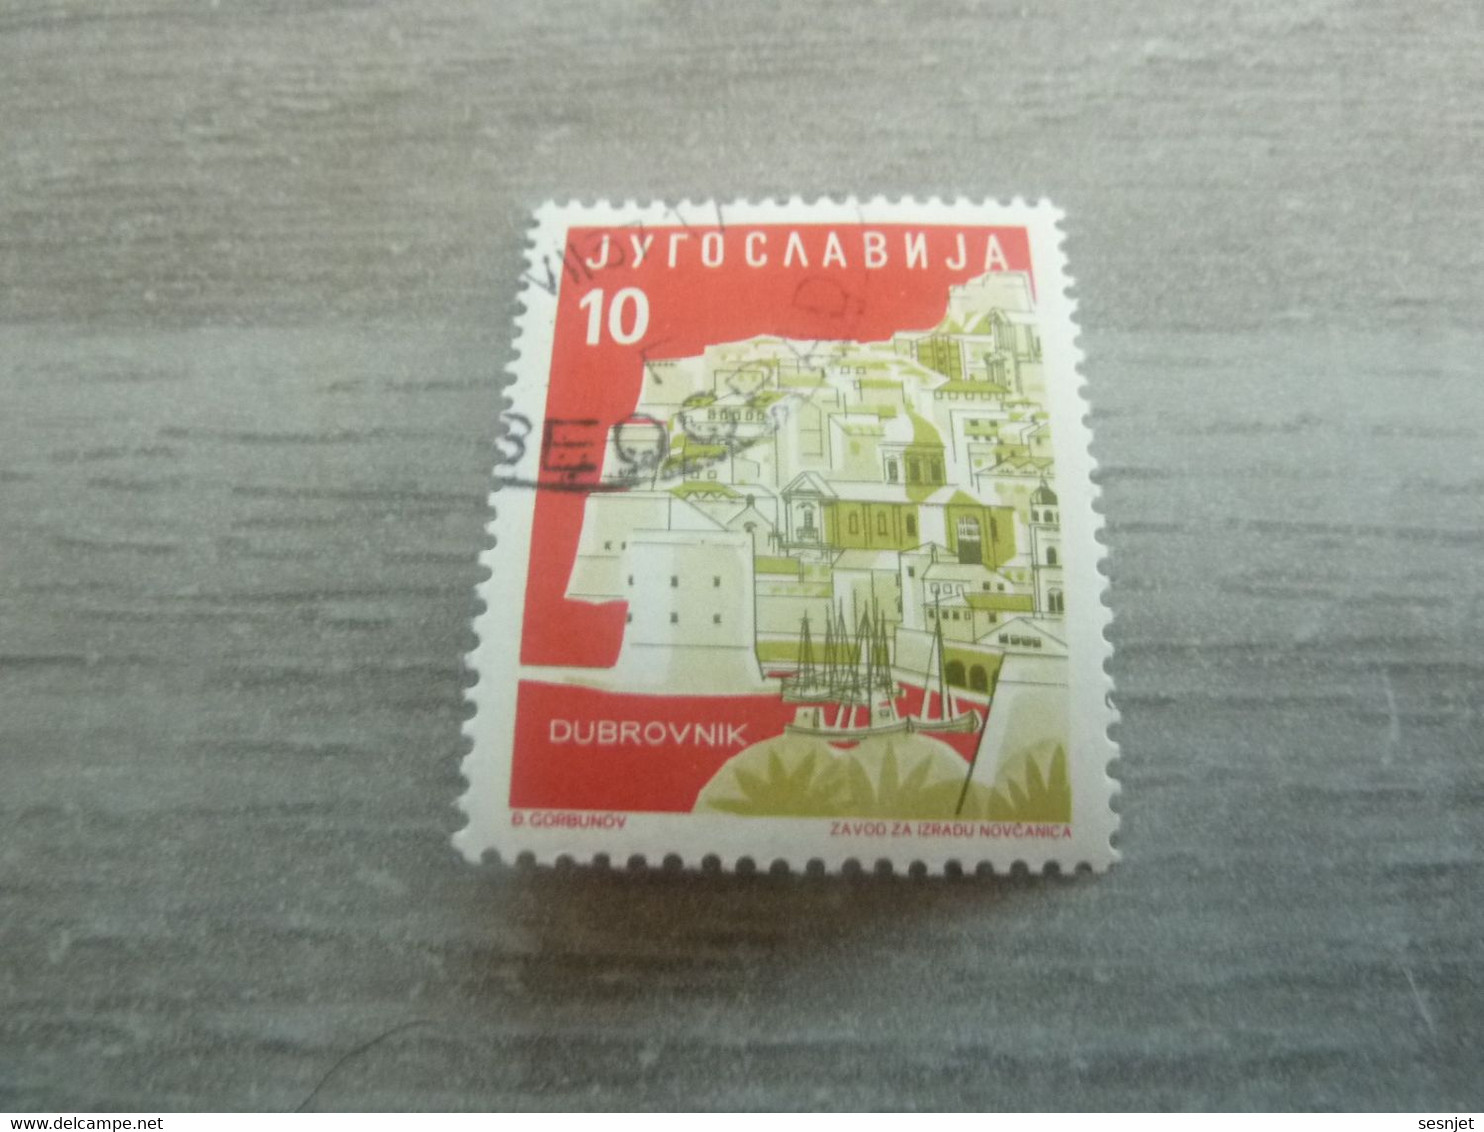 Jyrocaabnja - Dubrovnik - Val 10 - Multicolore - Oblitéré - - Used Stamps